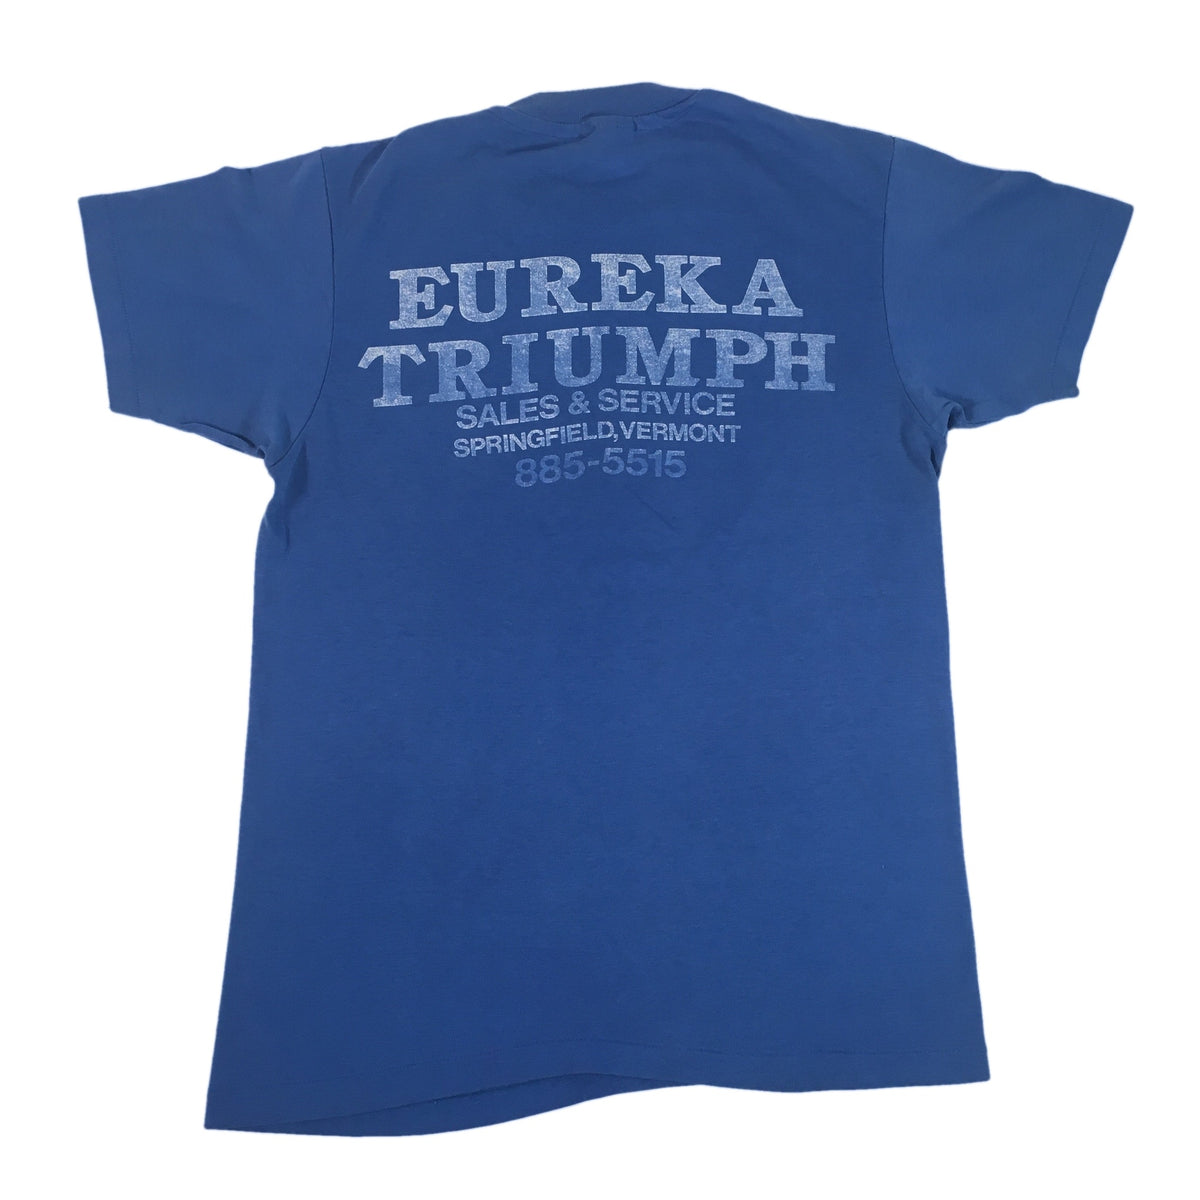 Vintage Triumph Motorcycles &quot;Eureka&quot; T-Shirt - jointcustodydc